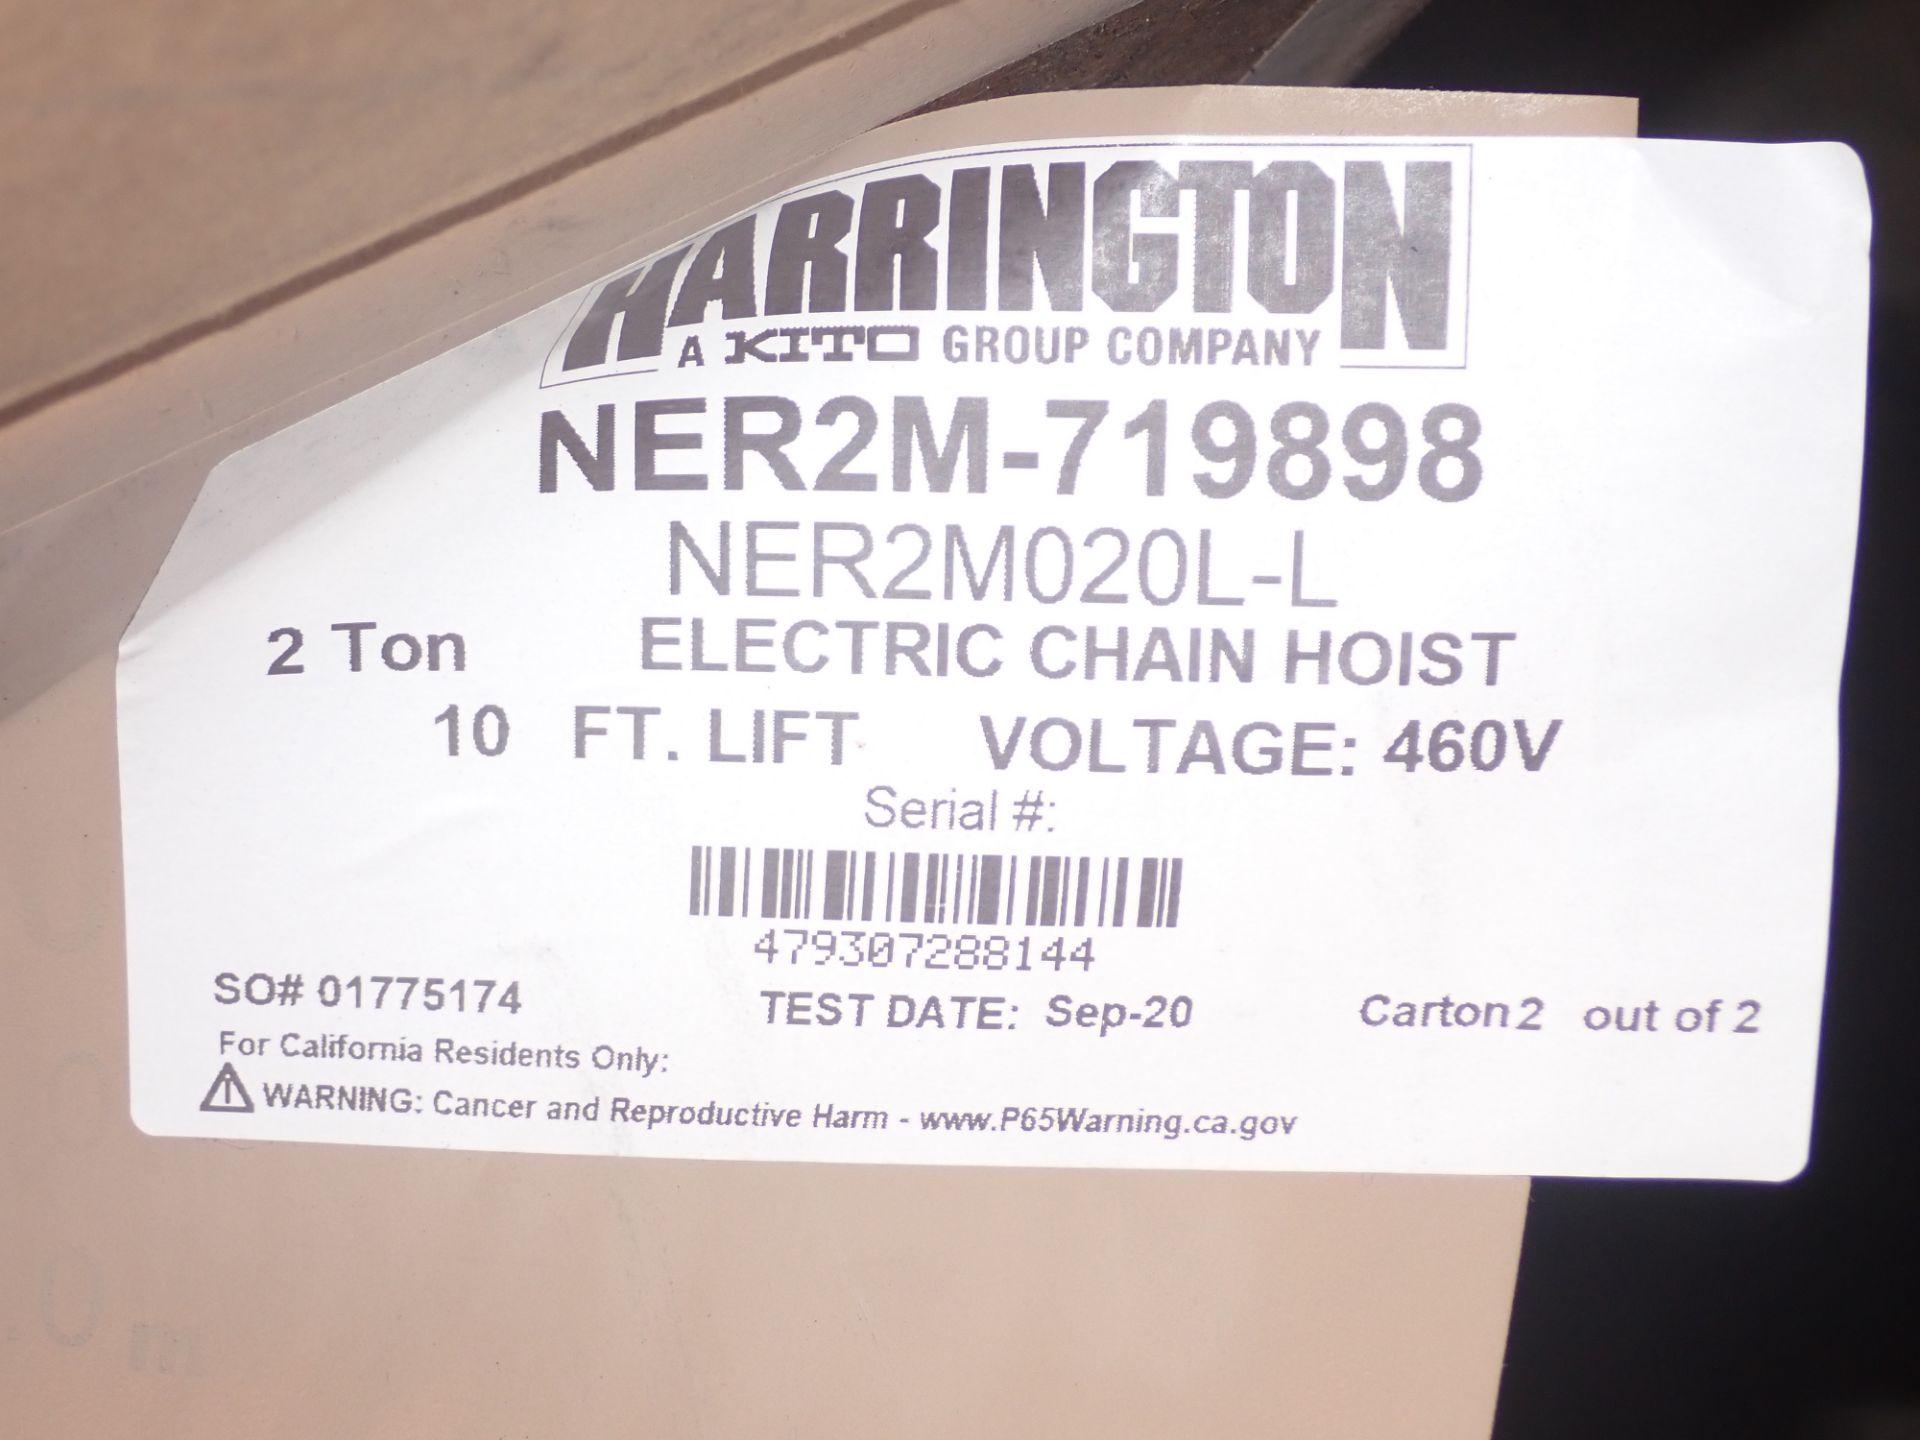 *NEW* Harrington 2 Ton Hoist #NER2M020L-L - Image 4 of 4